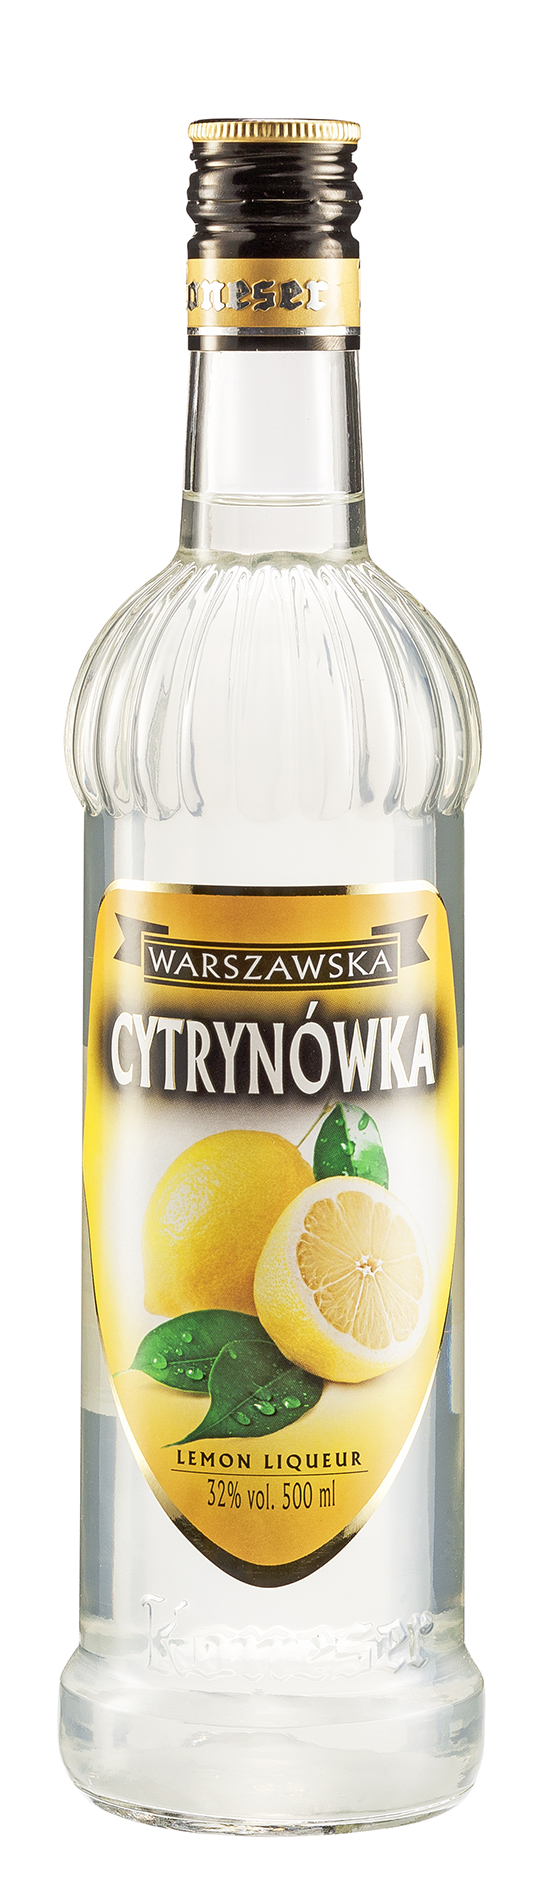 Warszawska Cytrynówka Zitrone 0,5L 32% vol.